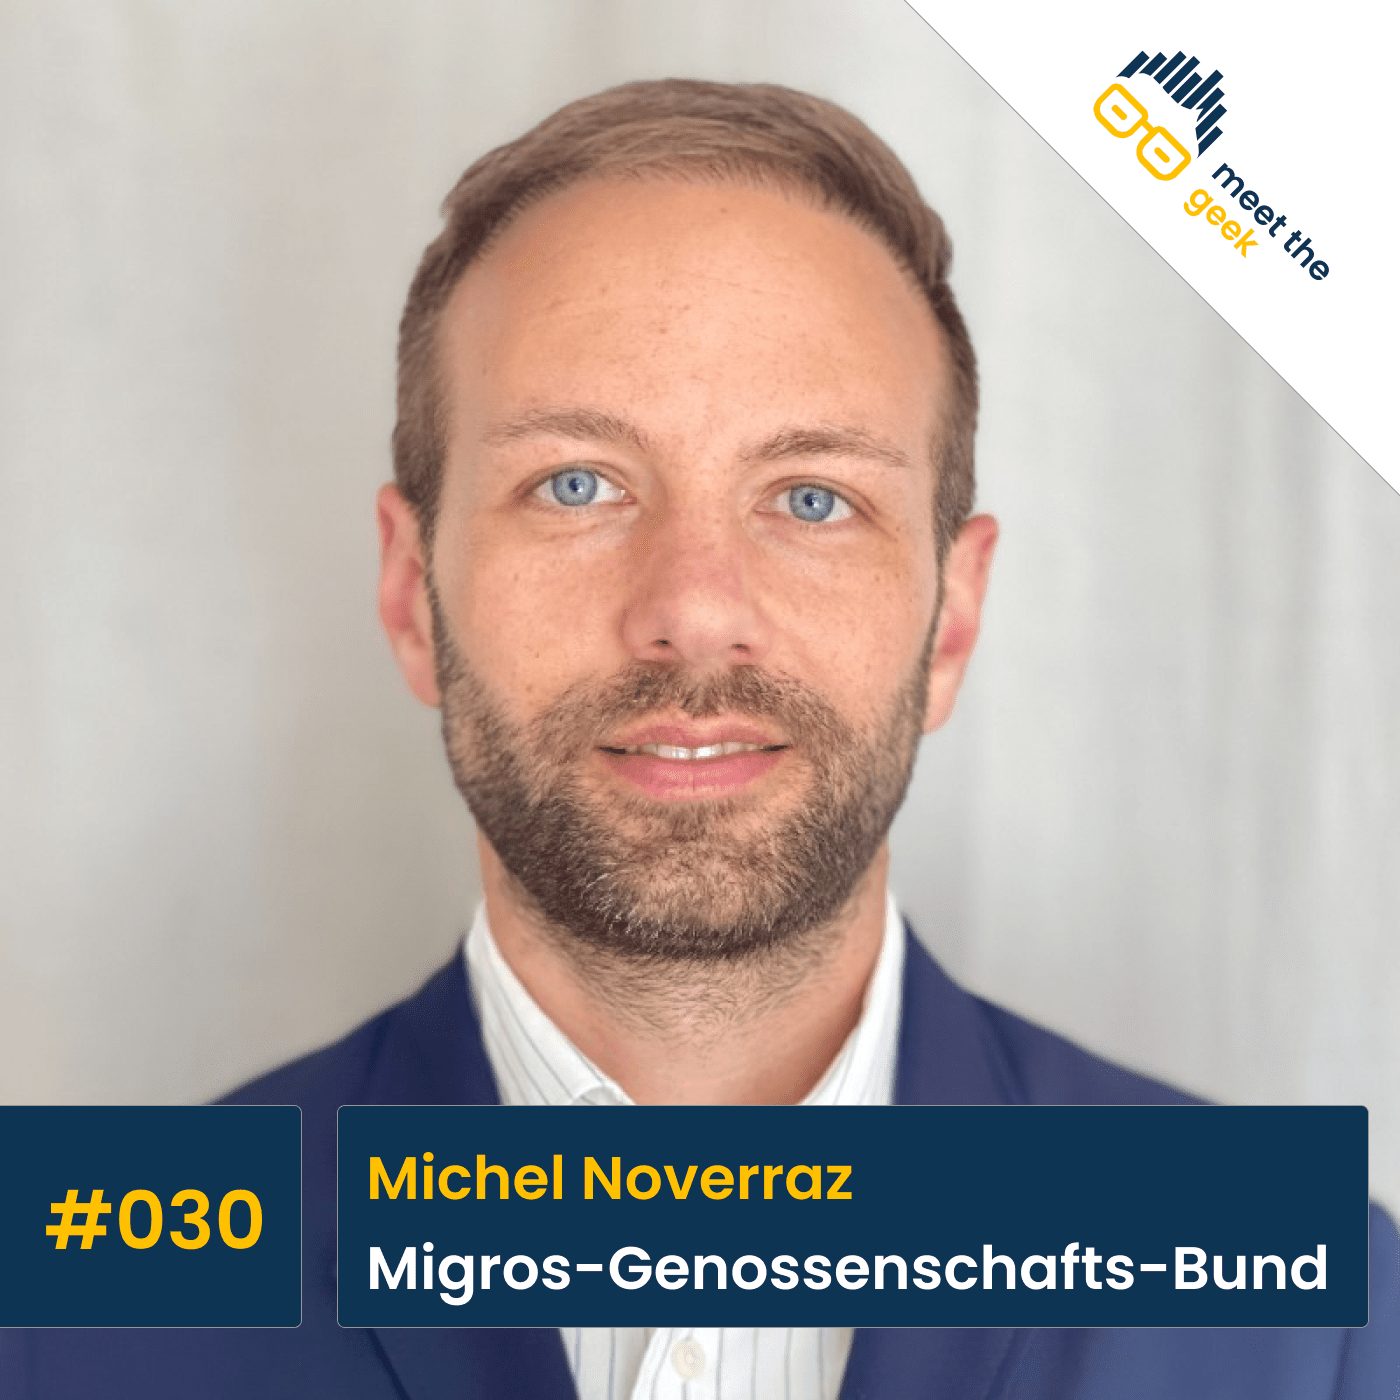 #030 Michel Noverraz, Migros-Genossenschafts-Bund